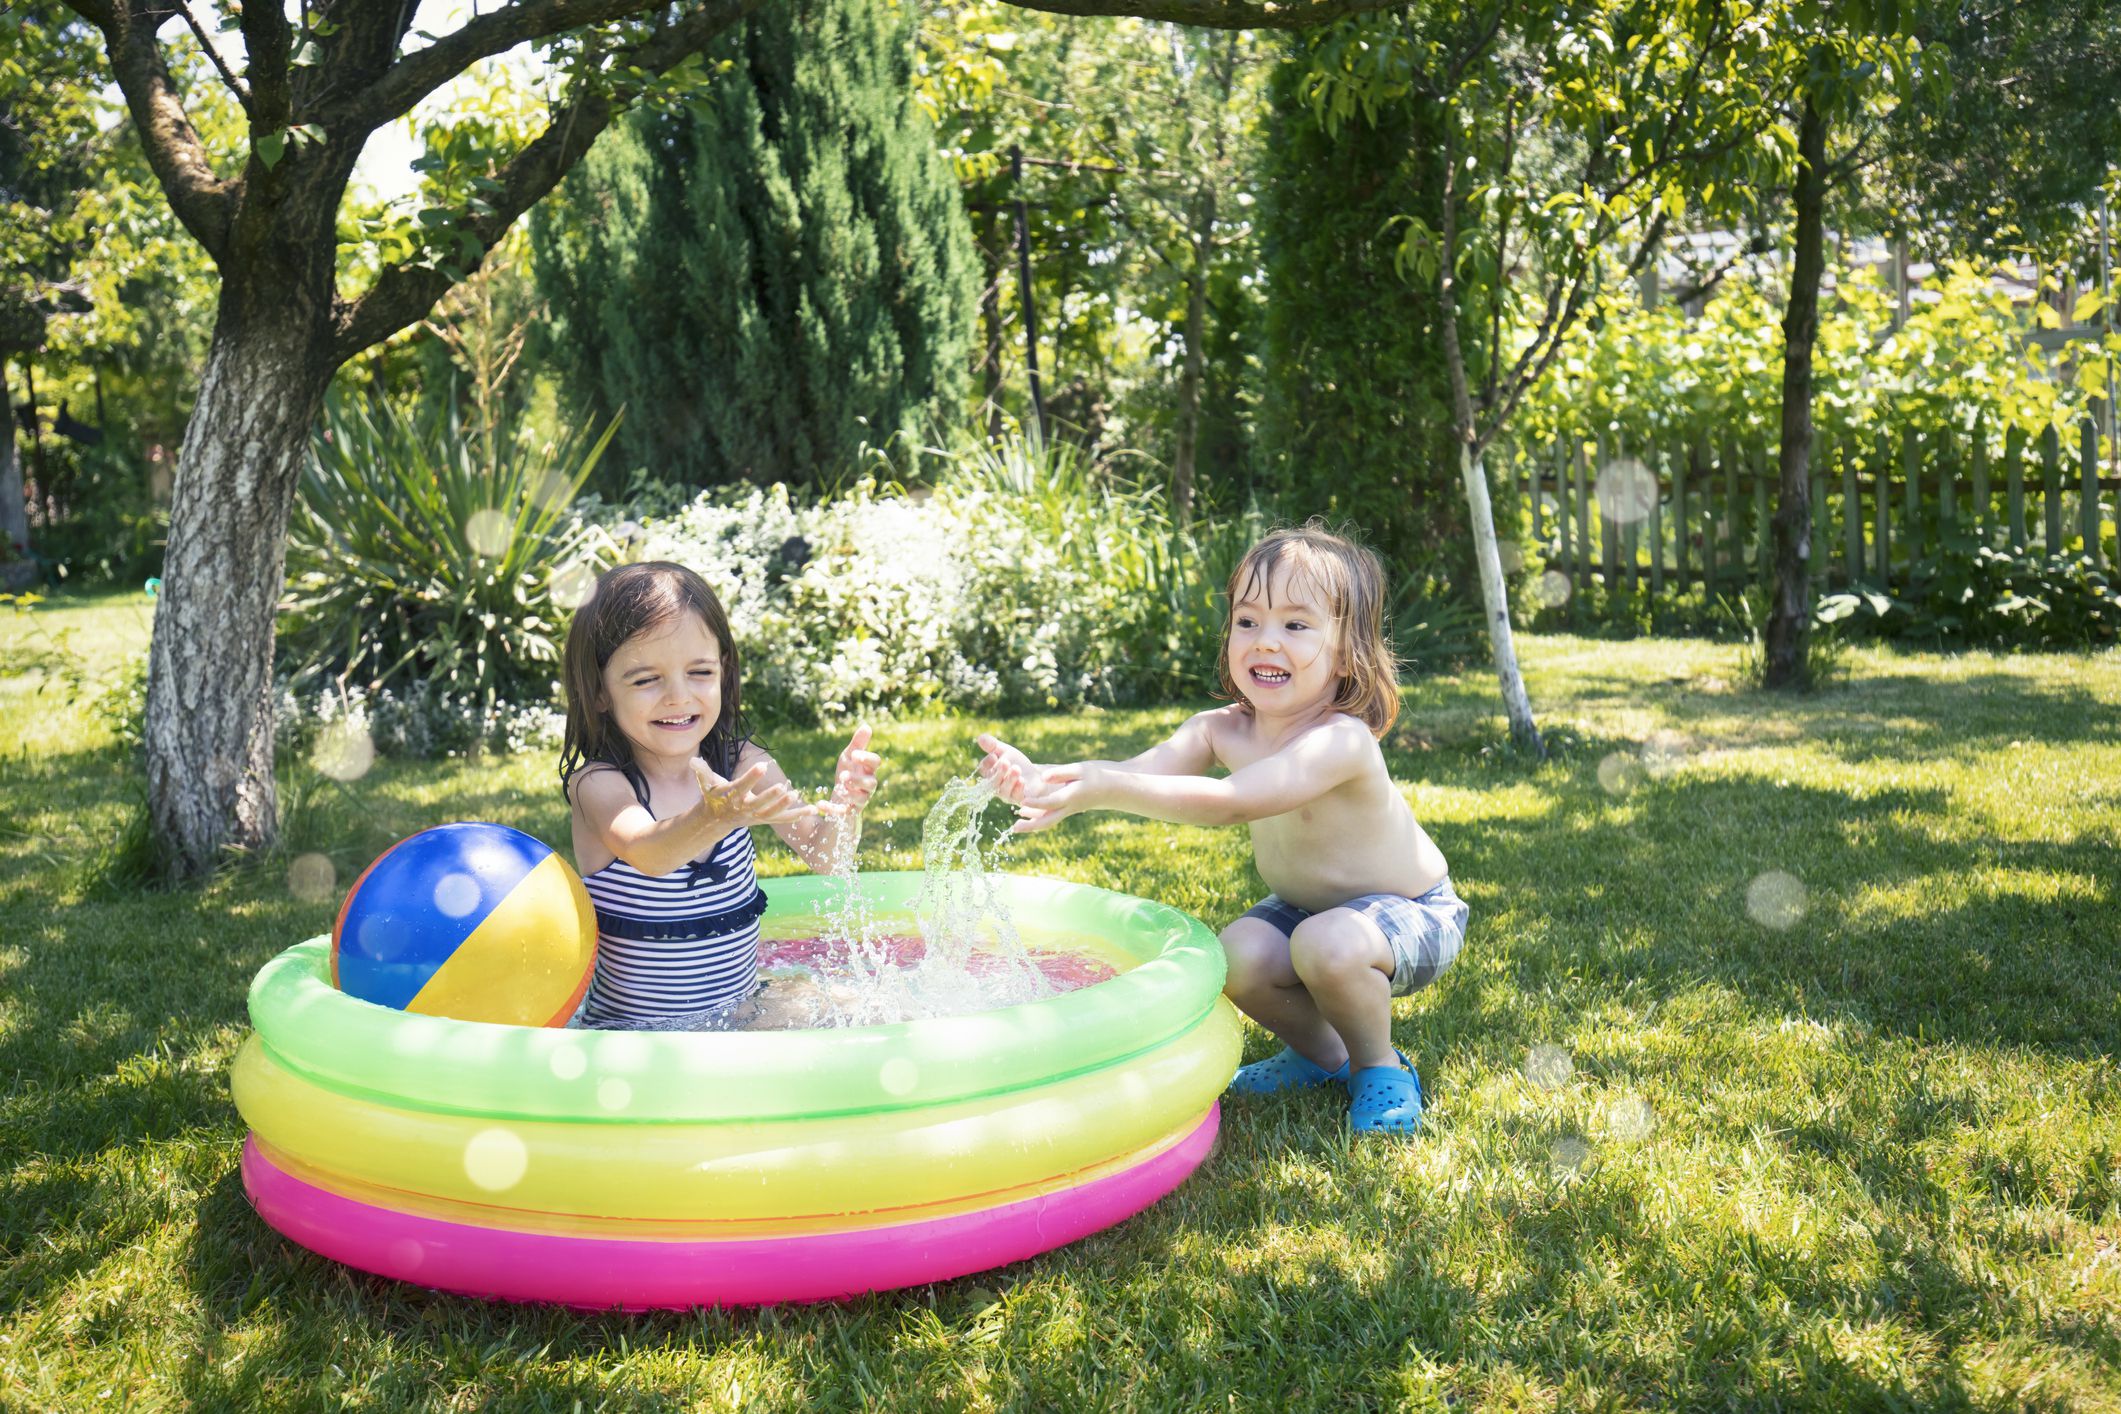 How to Keep Kiddie Pool Clean